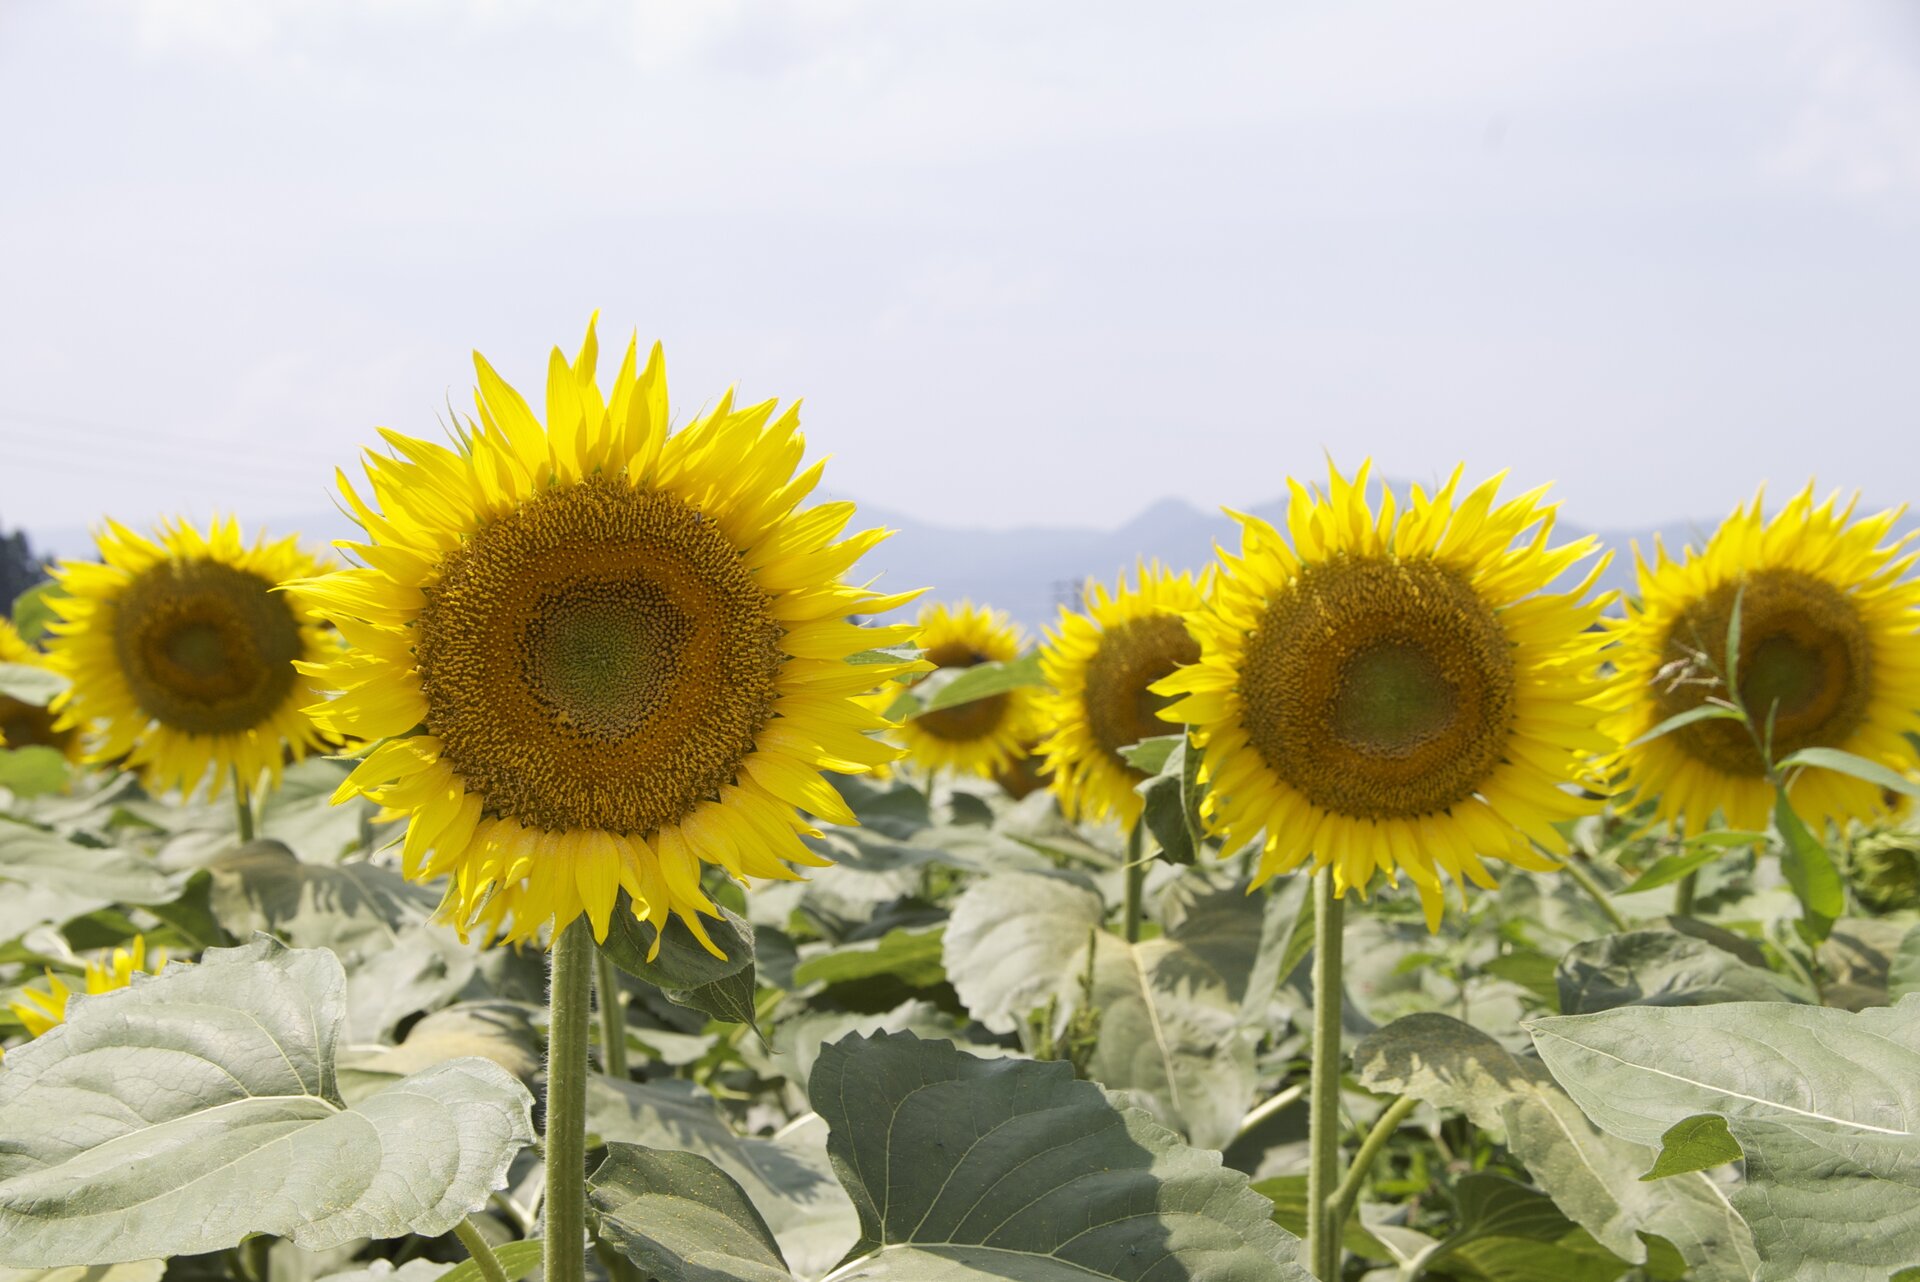 Fotografia przedstawia żółte kwiatostany słoneczników, rosnących na polu. Słoneczniki potrafią kierować swoje kwiatostany w stronę słońca. Ten ruch nazywa się fototropizm.